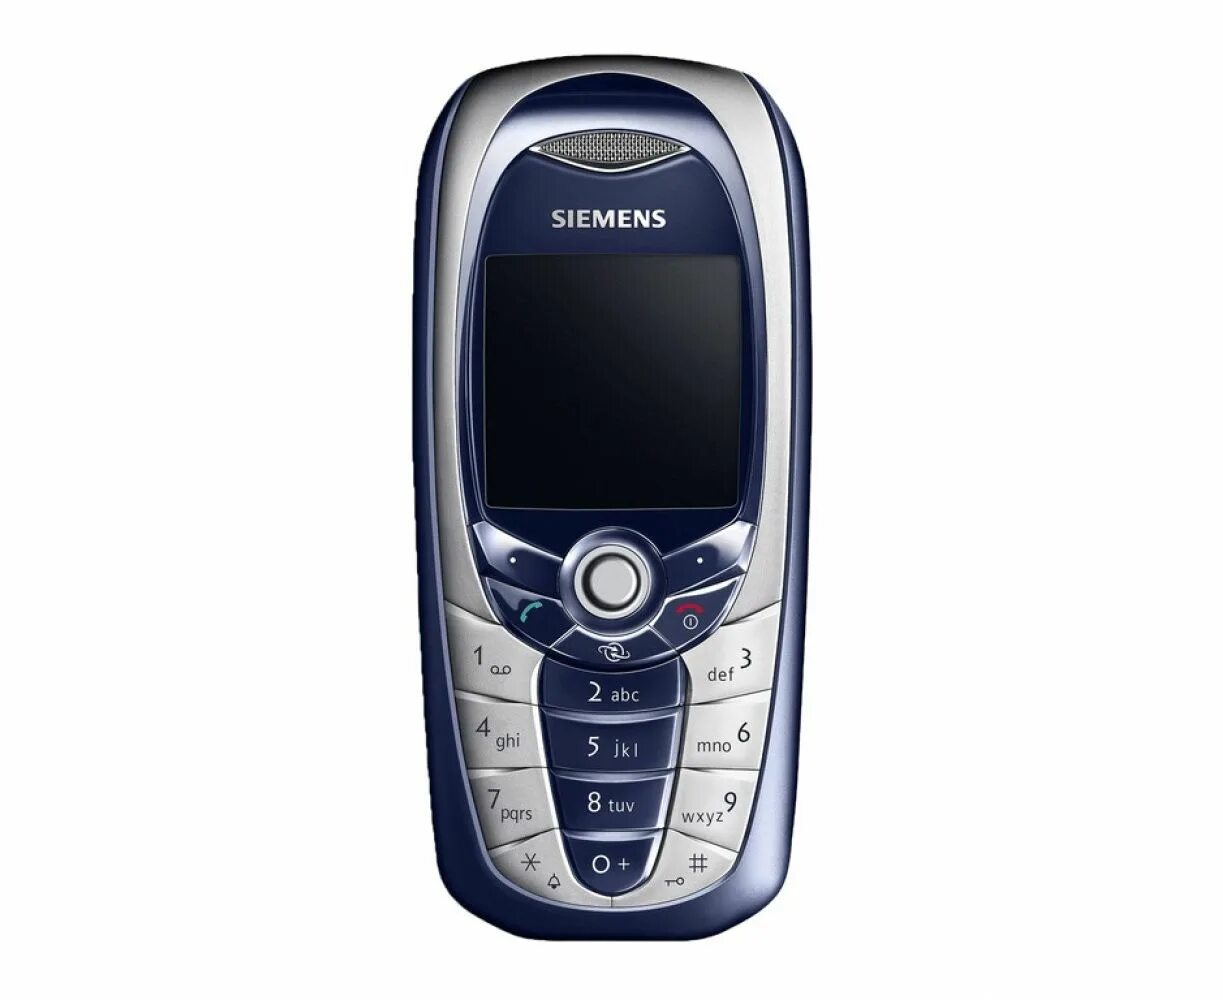 Siemens cx65. Сименс а65 голубой. Nokia cx65. Сименс СХ 65 кнопочный с джойстиком. Сх 65